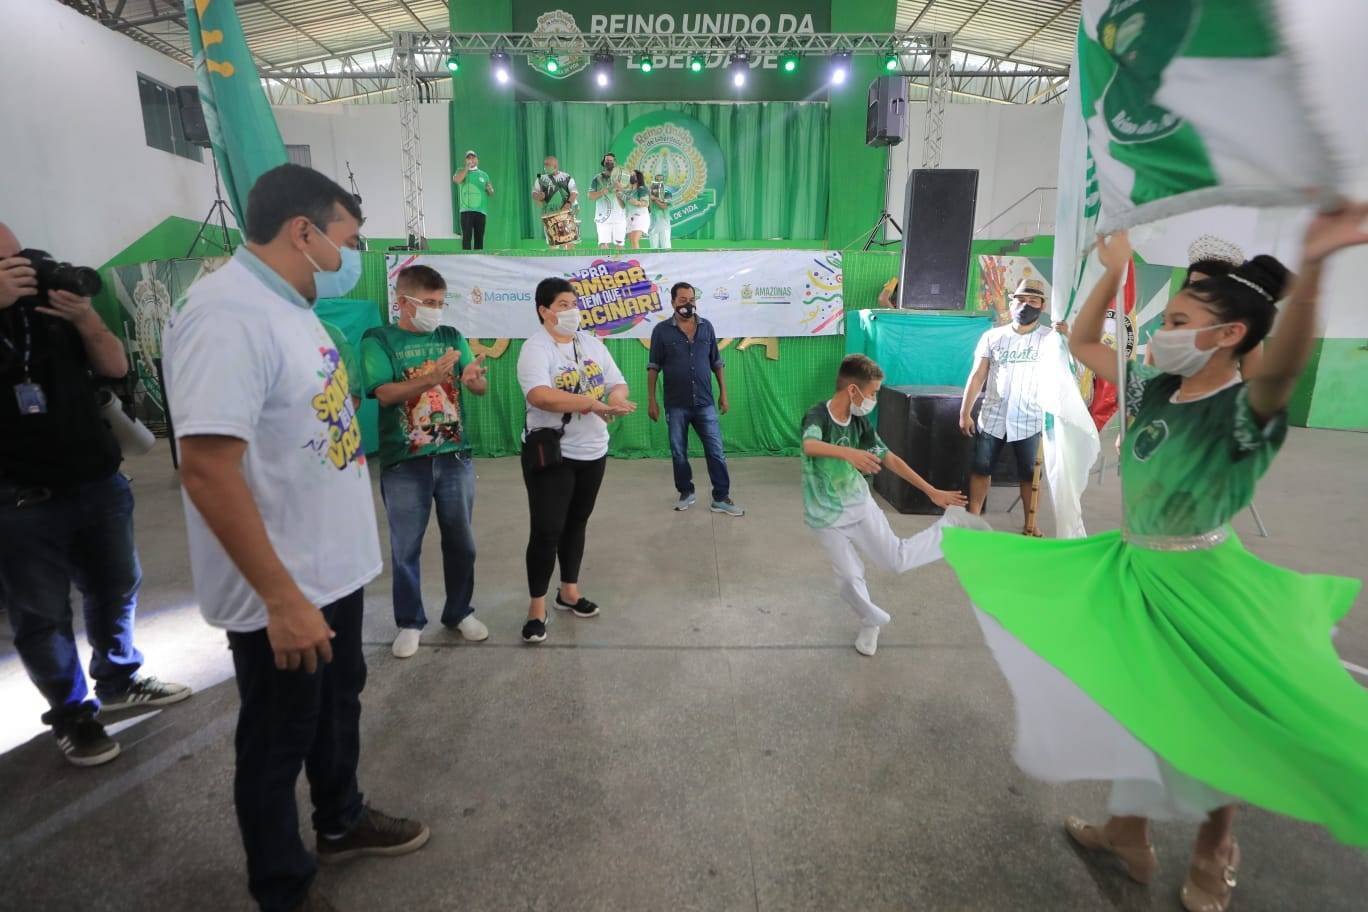 Neste sábado, oito escolas de samba de Manaus abriram suas quadras para vacinar a população / Foto: Diego Peres/Secom